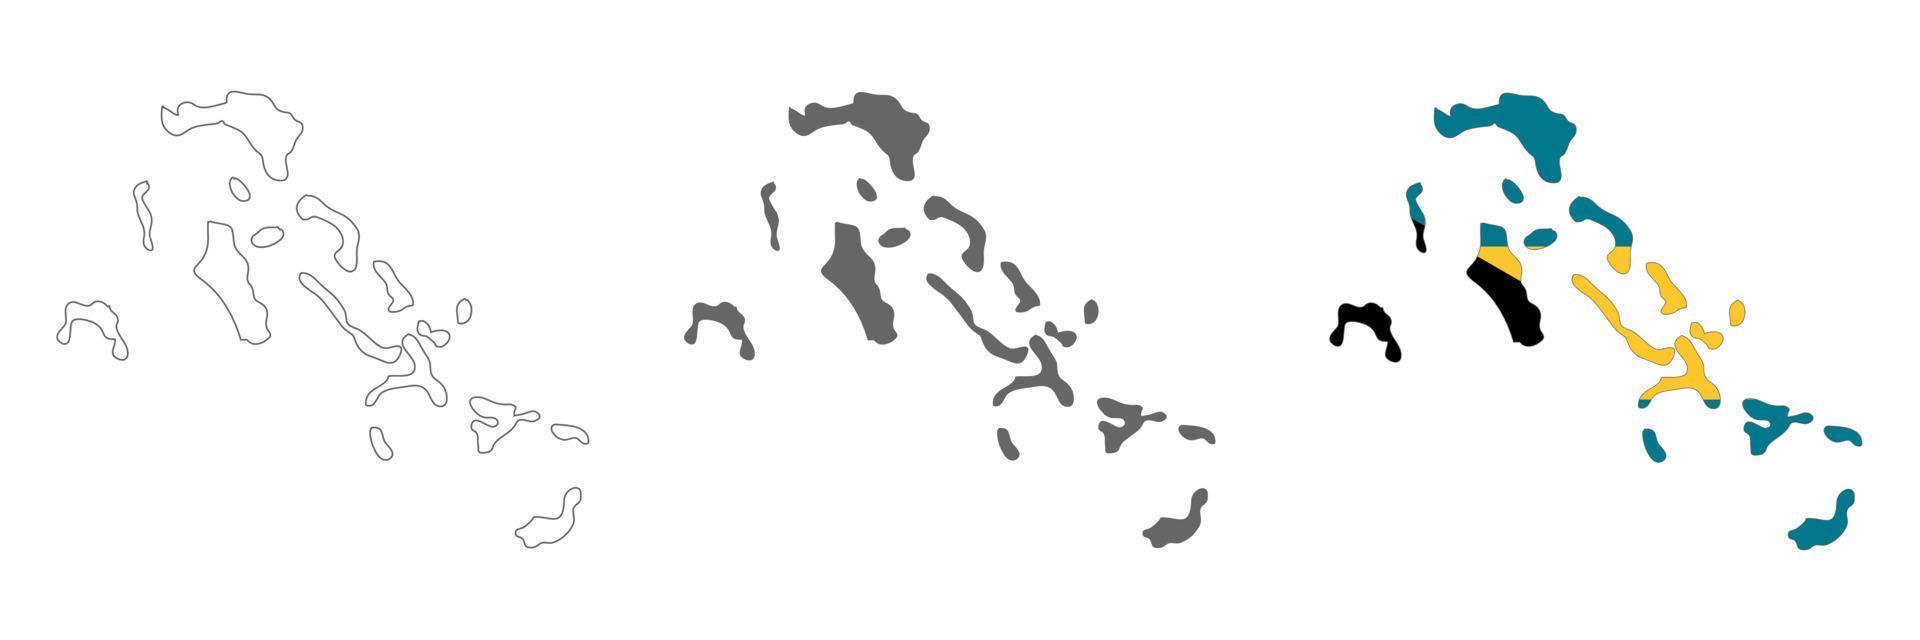 hochdetaillierte bahamas-karte mit grenzen auf hintergrund isoliert vektor